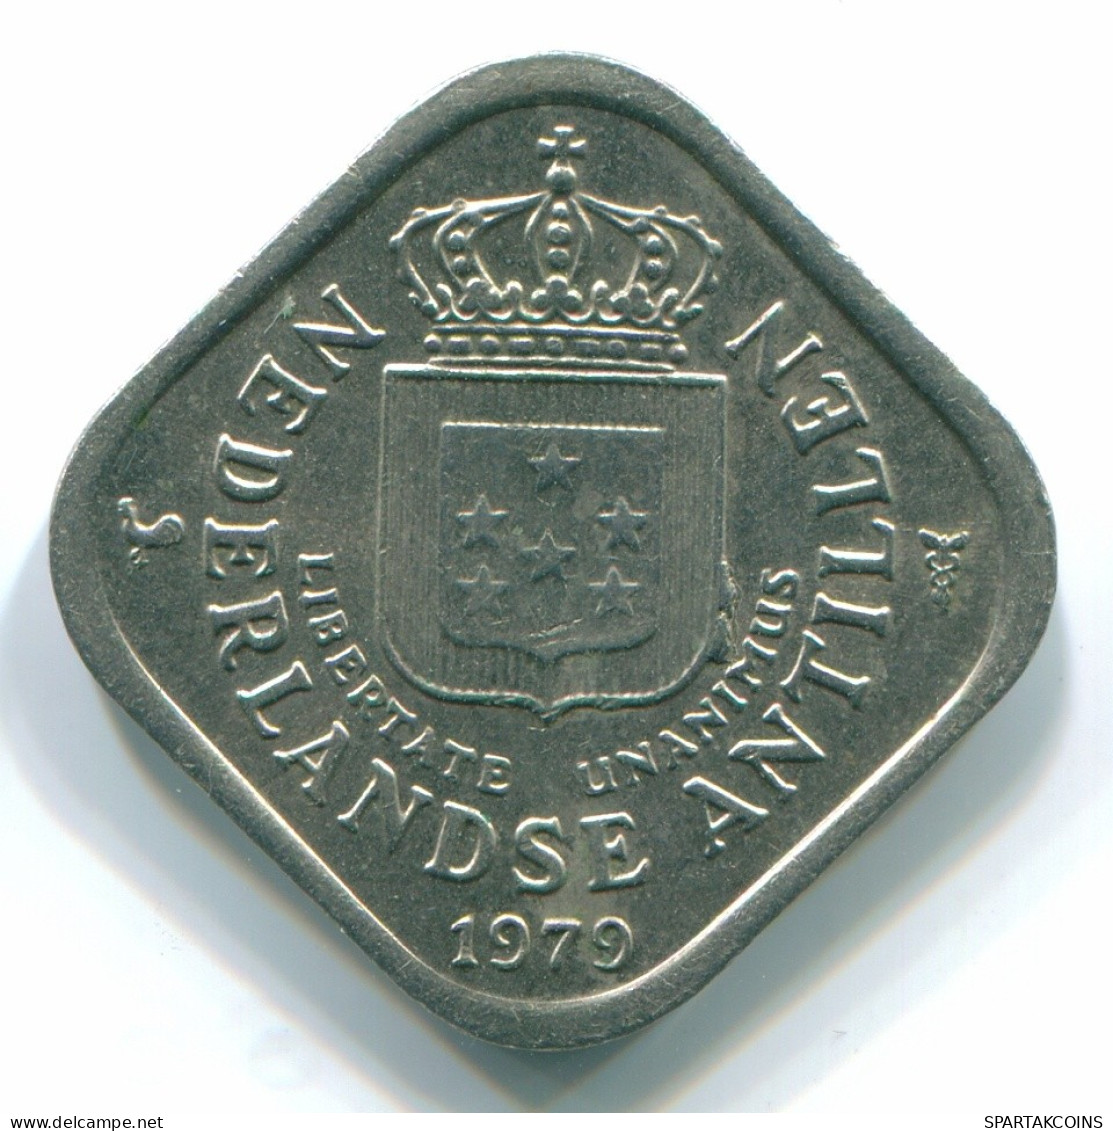 5 CENTS 1979 NETHERLANDS ANTILLES Nickel Colonial Coin #S12295.U.A - Niederländische Antillen